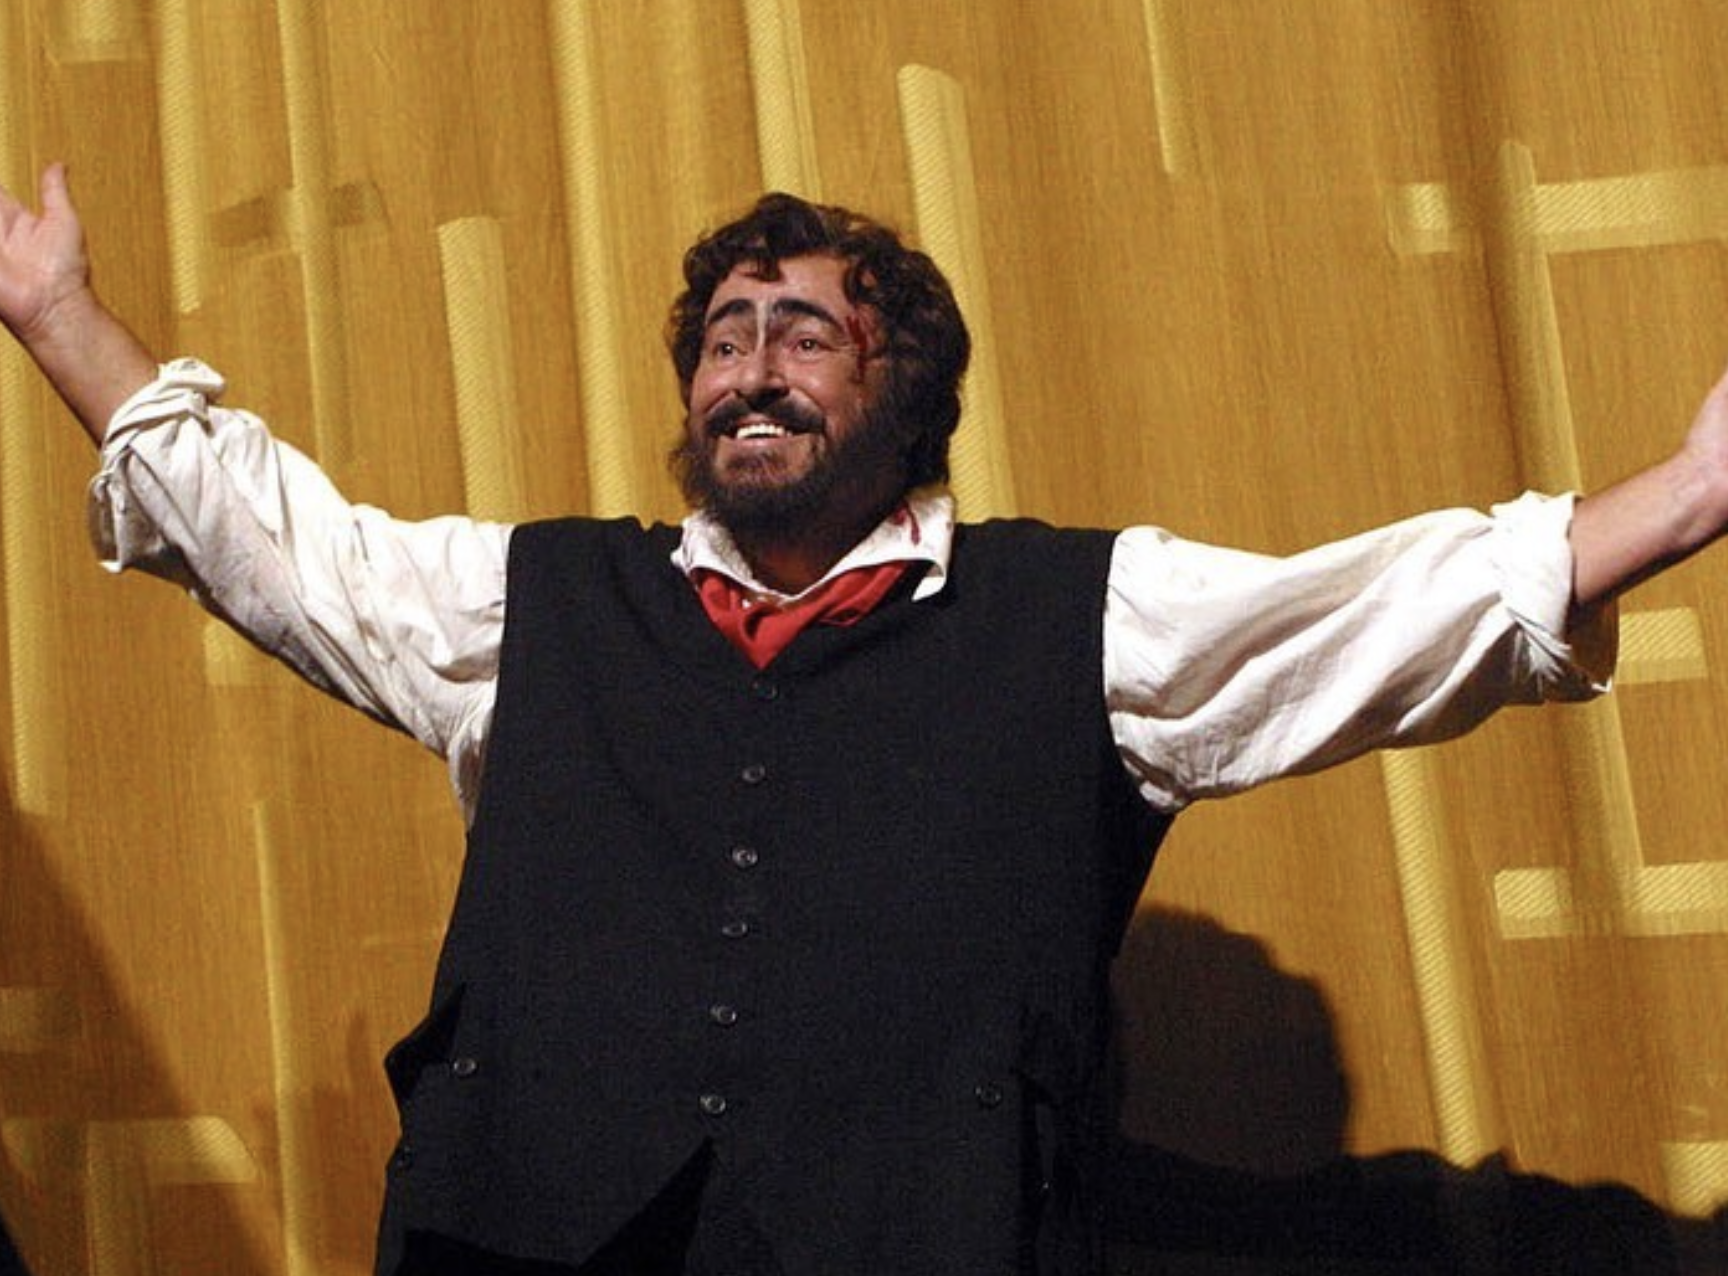 Luciano Pavarotti, inaugurata la sua stella sulla storica “Walk of Fame” di Hollywood